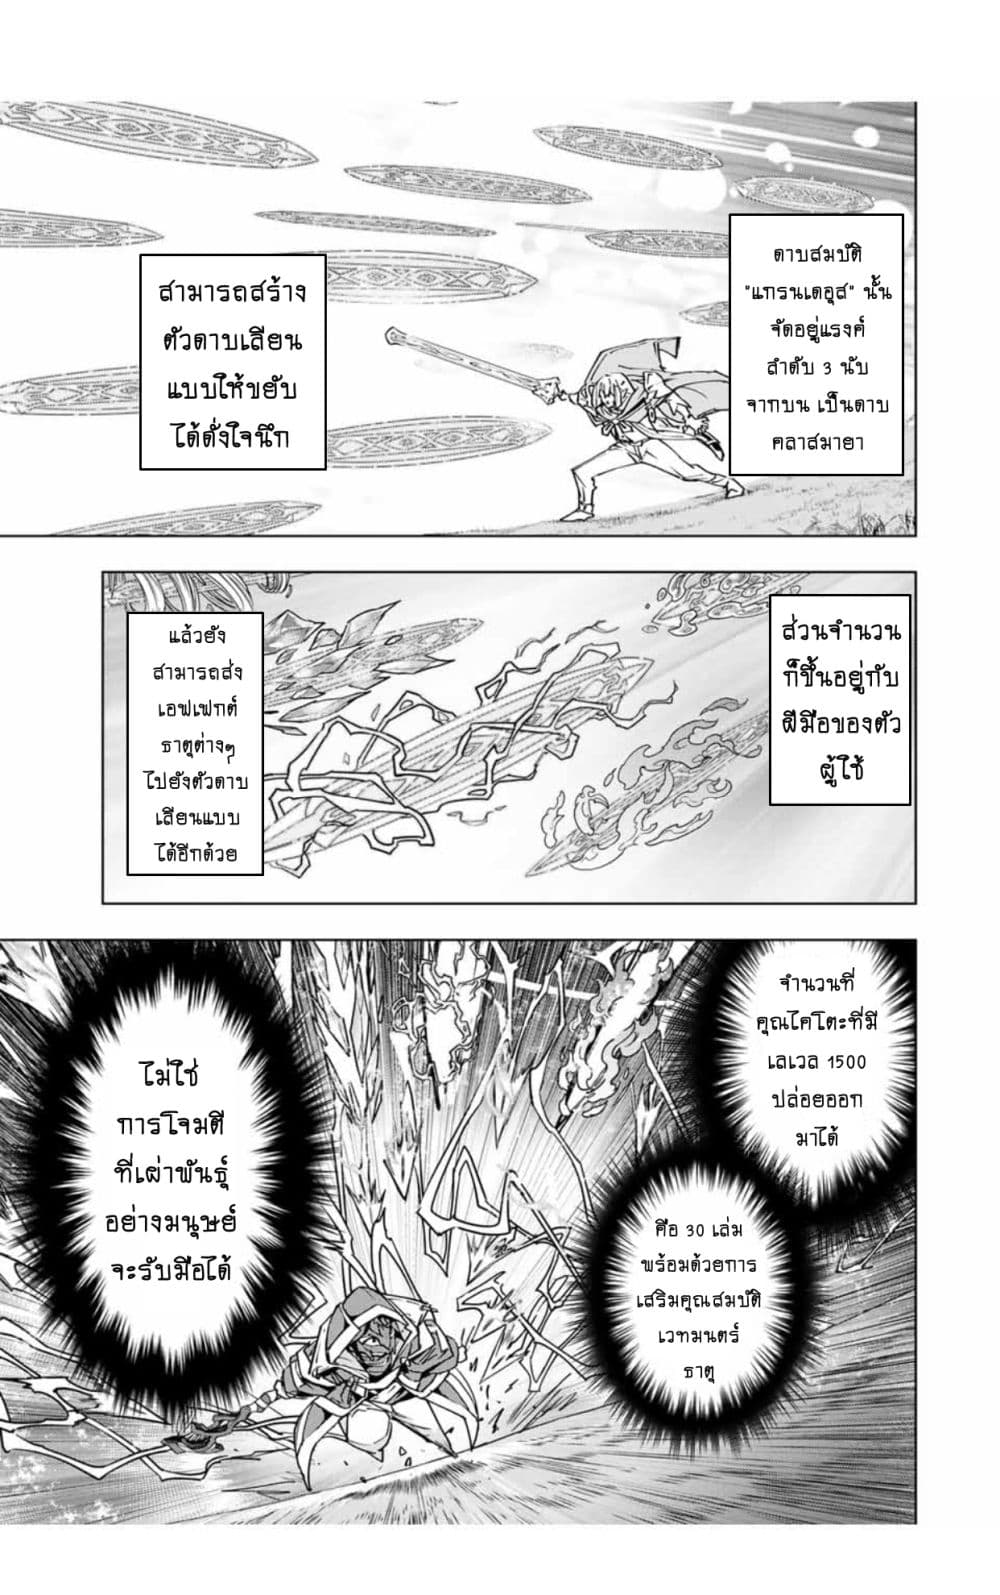 อ่านการ์ตูน Shinjiteita Nakama Tachi Ni Dungeon Okuchi De Korosare Kaketa ga Gift 『Mugen Gacha』 De Level 9999 No Nakama Tachi Wo Te Ni Irete Moto Party Member To Sekai Ni Fukushu & 『Zama A!』 Shimasu! 21 ภาพที่ 6